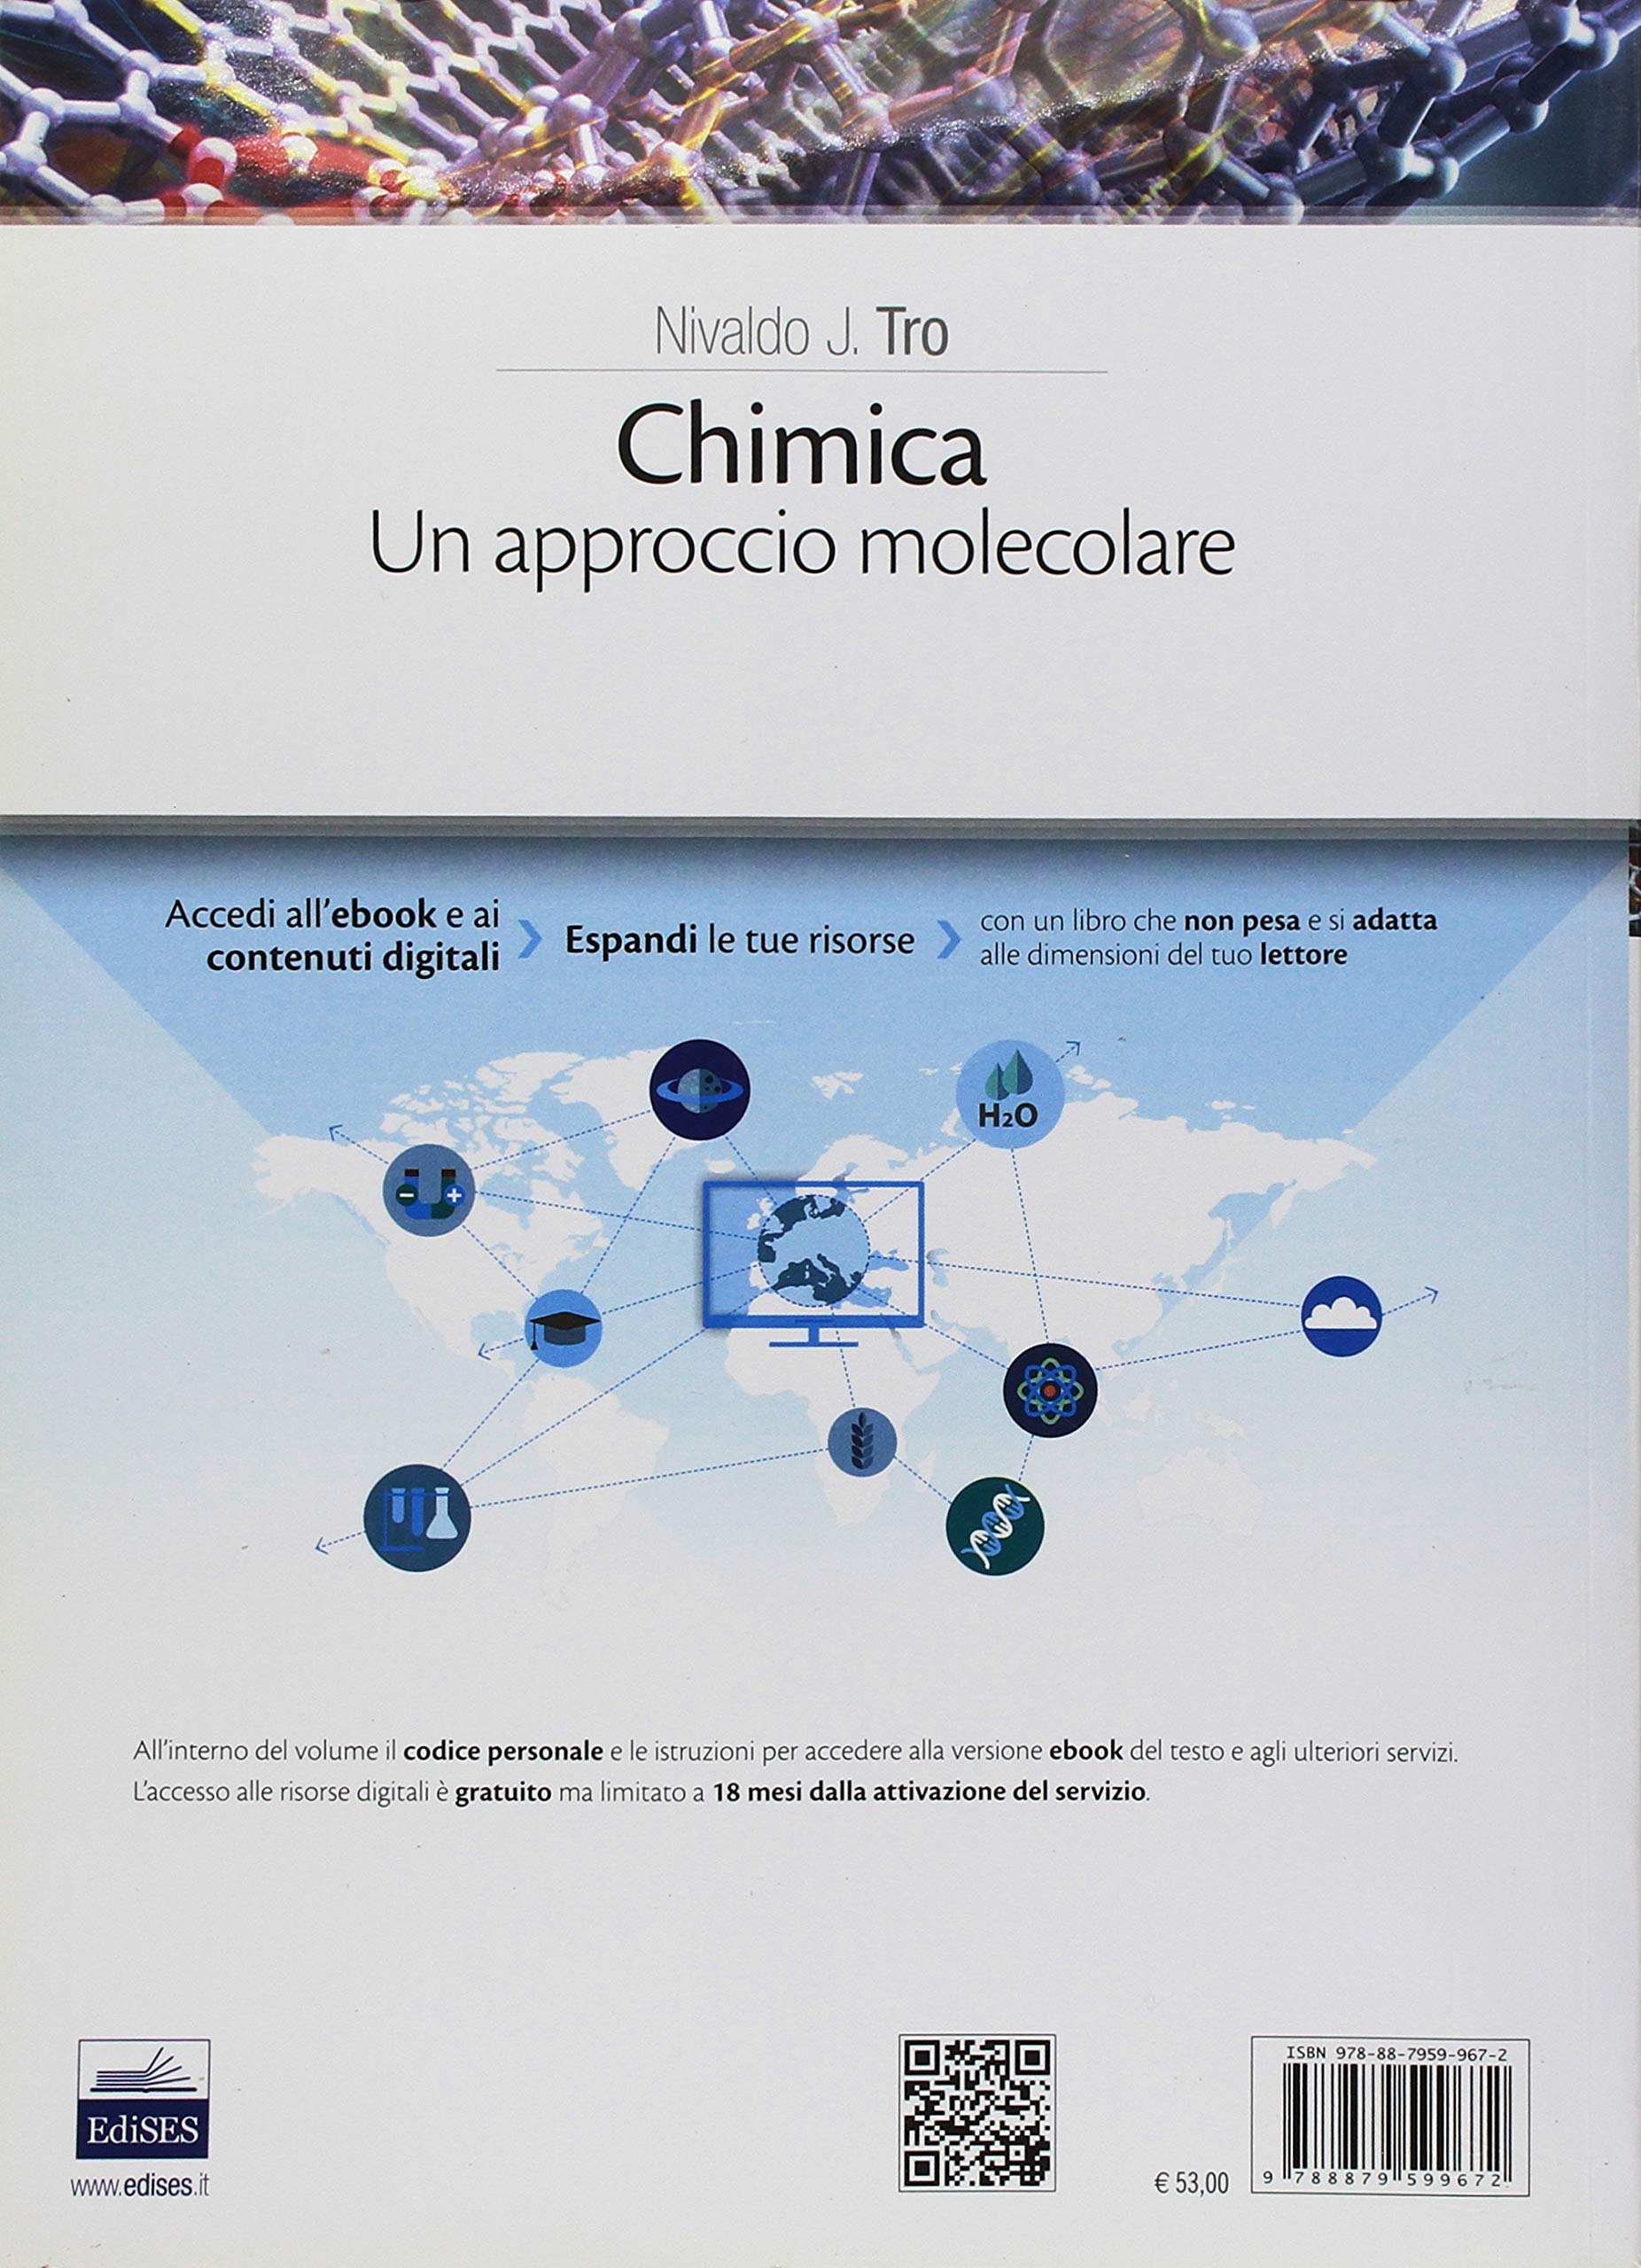 chimica un approccio molecolare pdf viewer